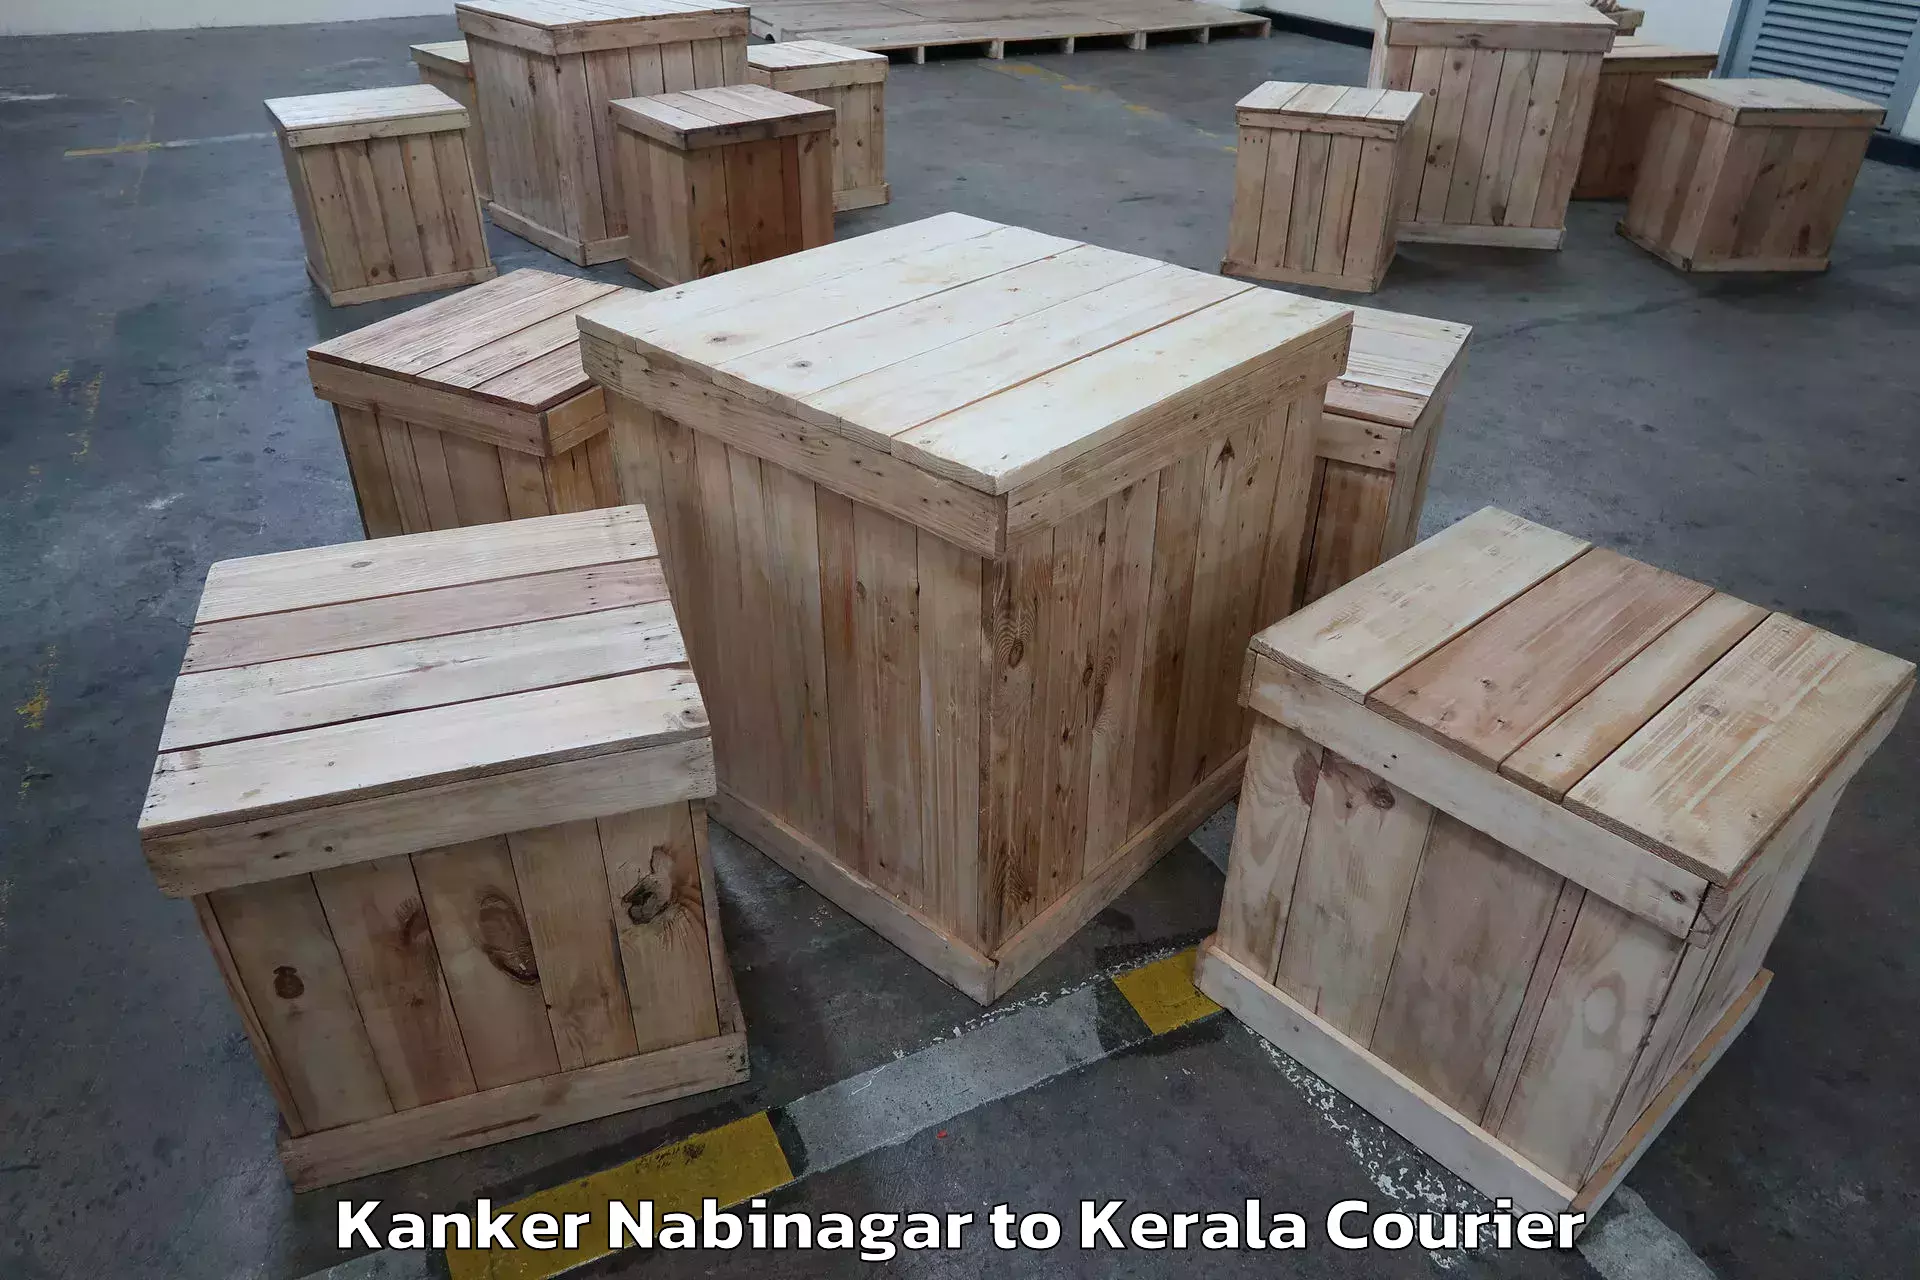 Furniture transport experts Kanker Nabinagar to Mundakayam